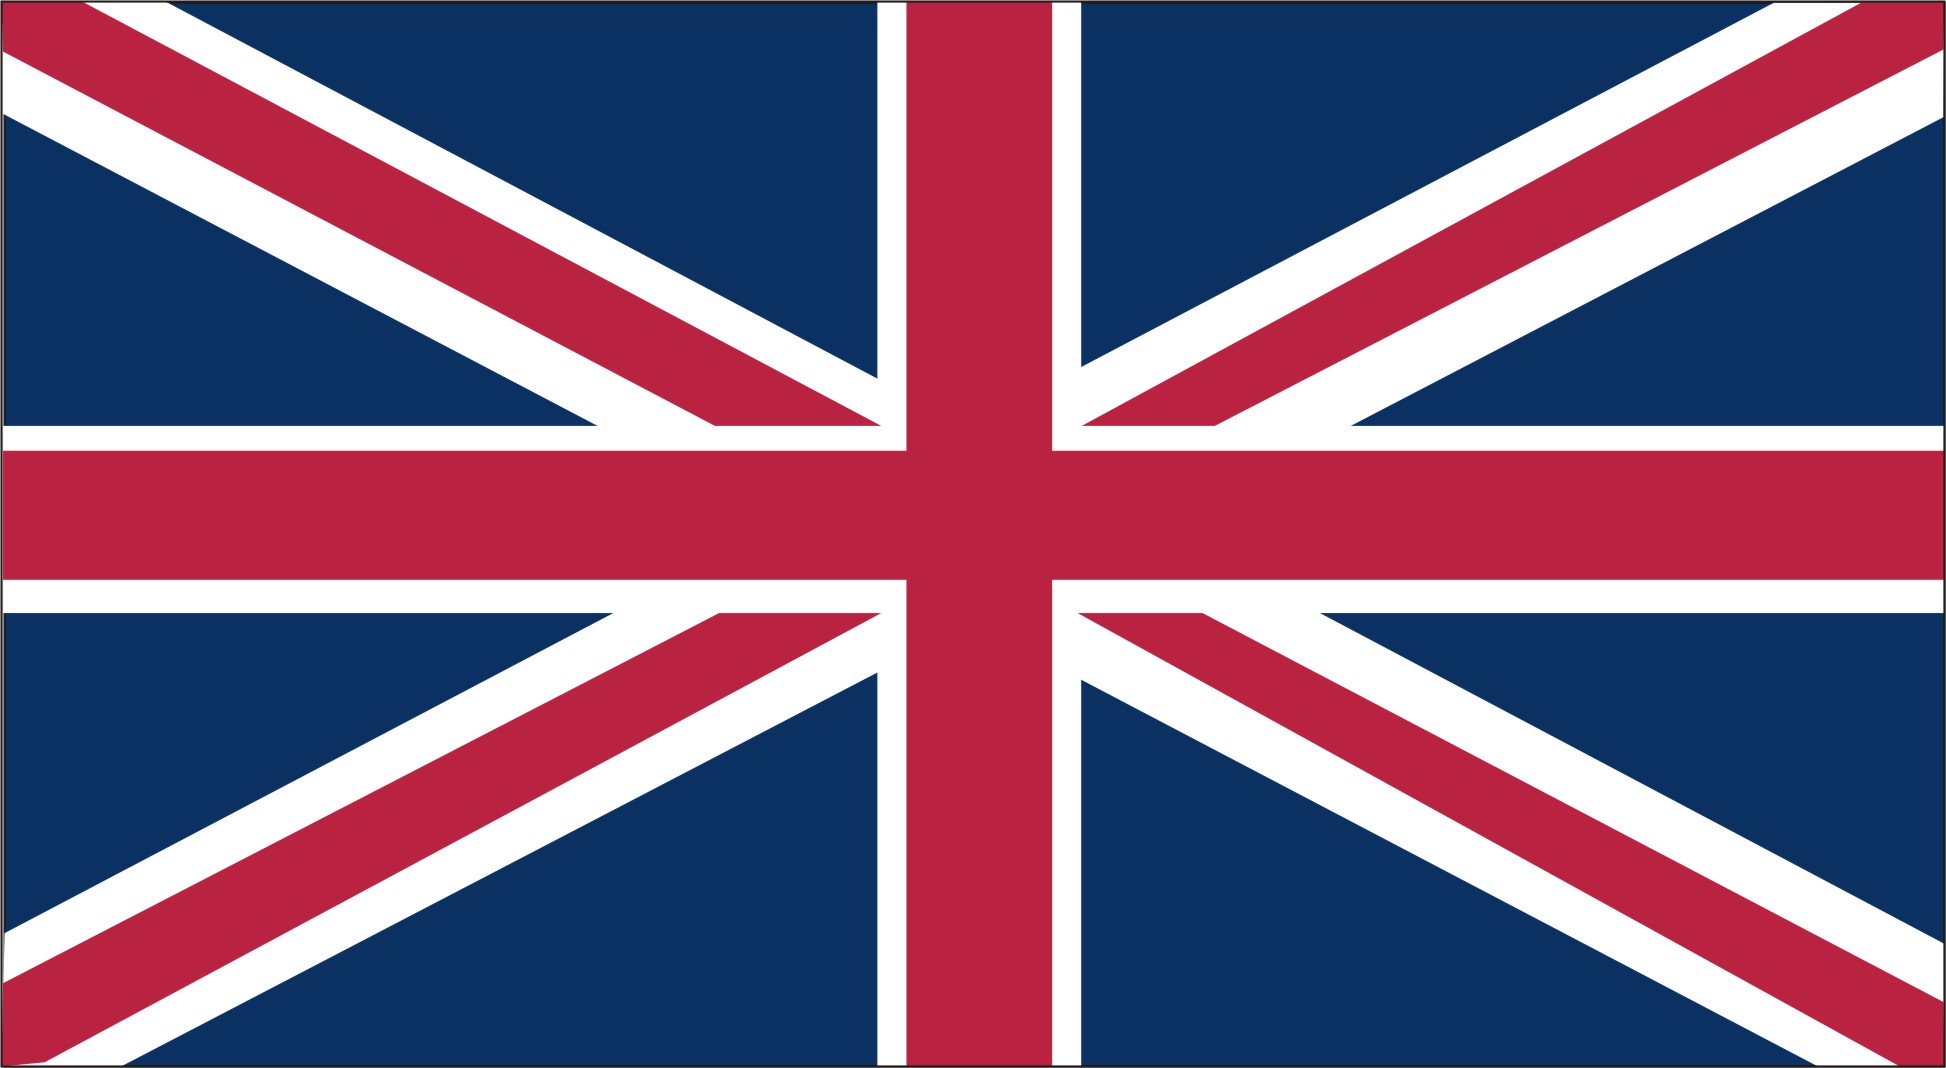 uk-flag.jpg